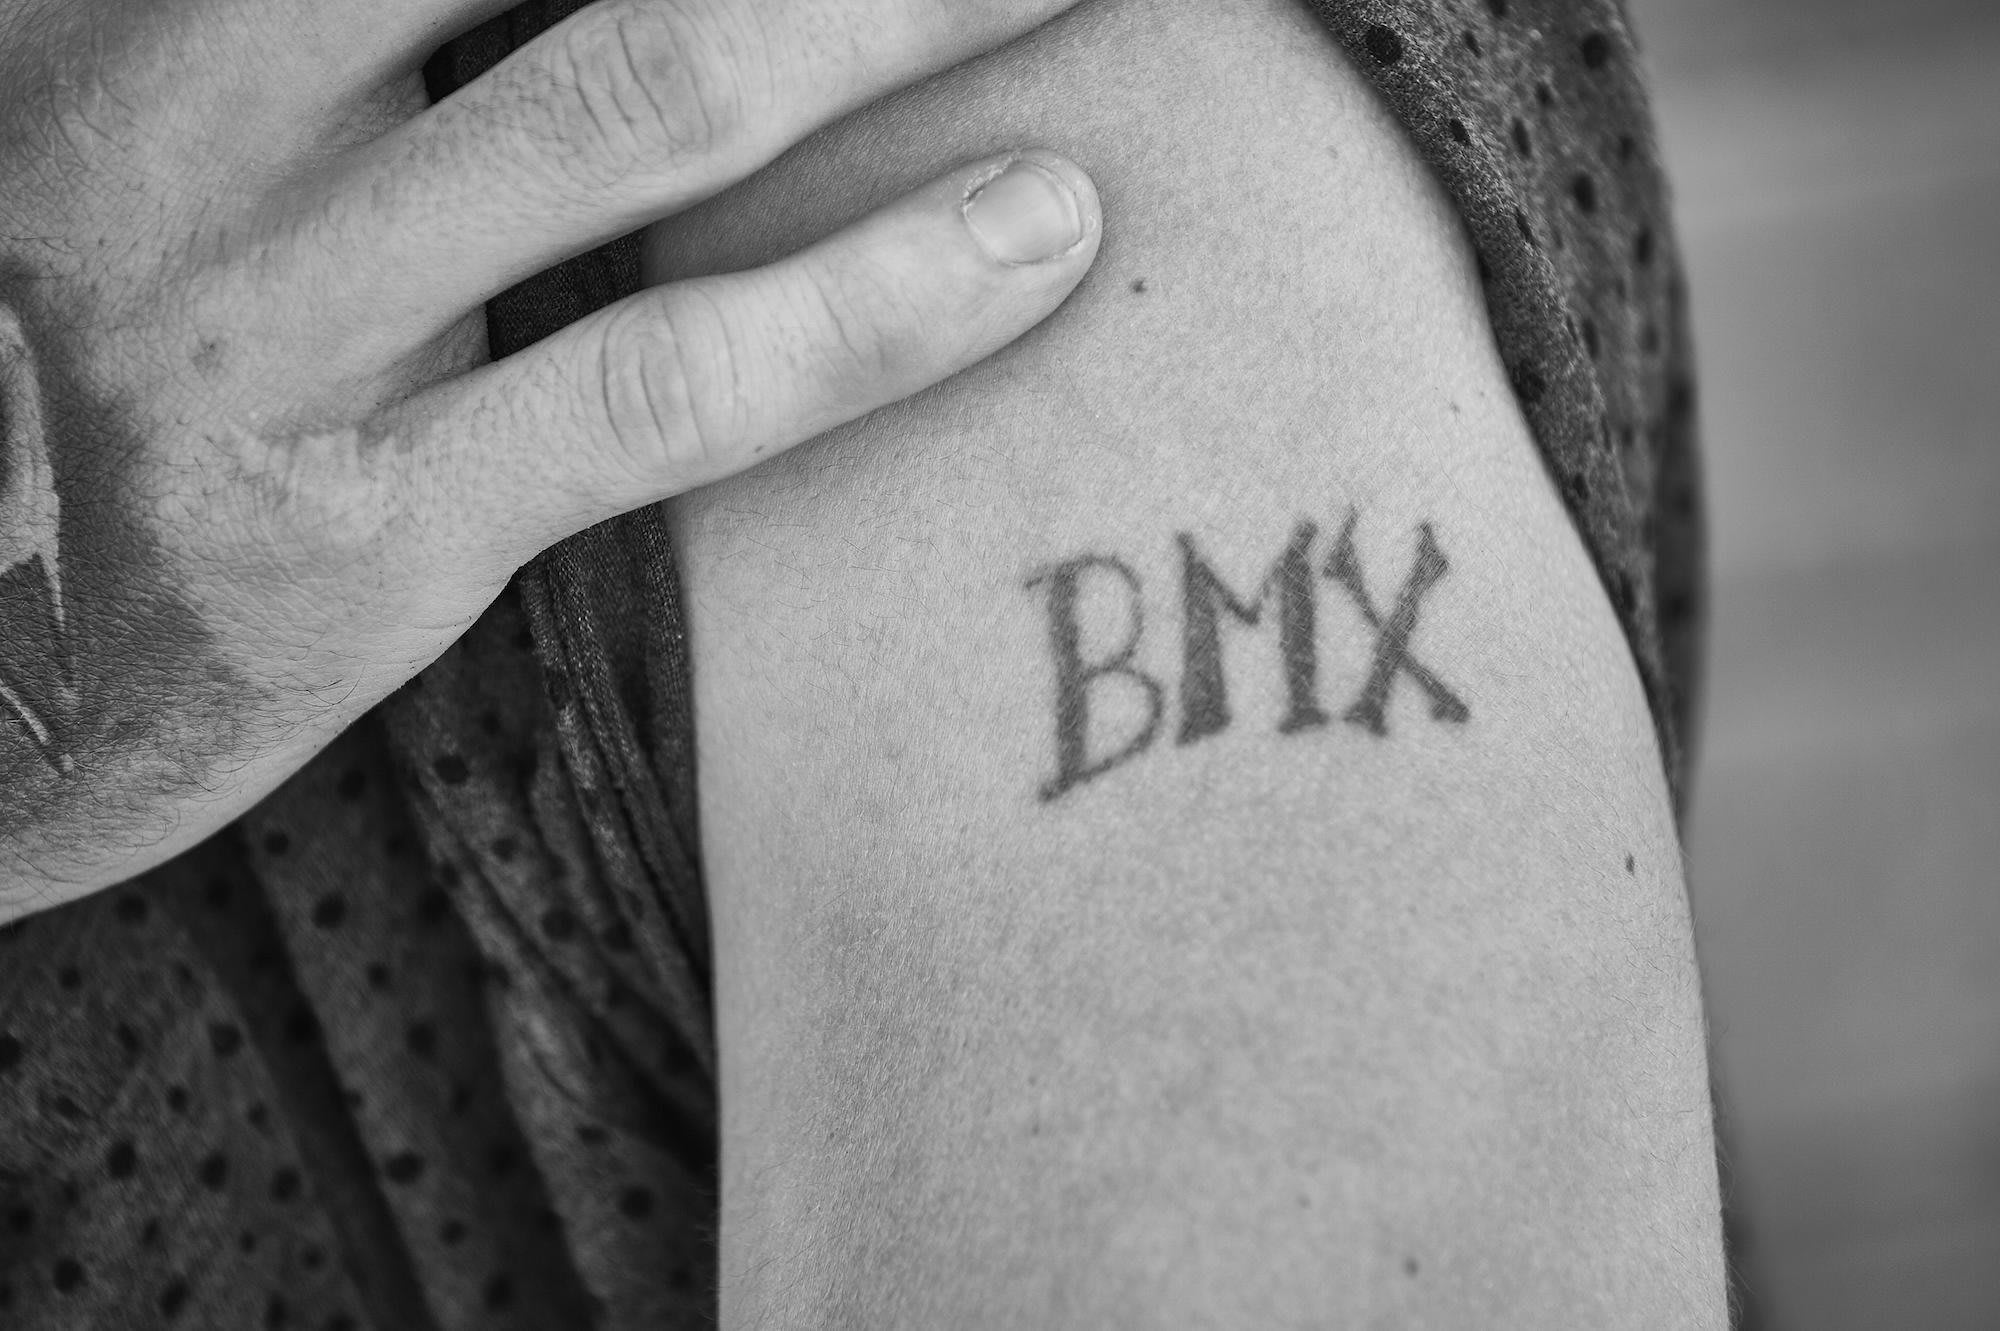 Тату BMX на руку